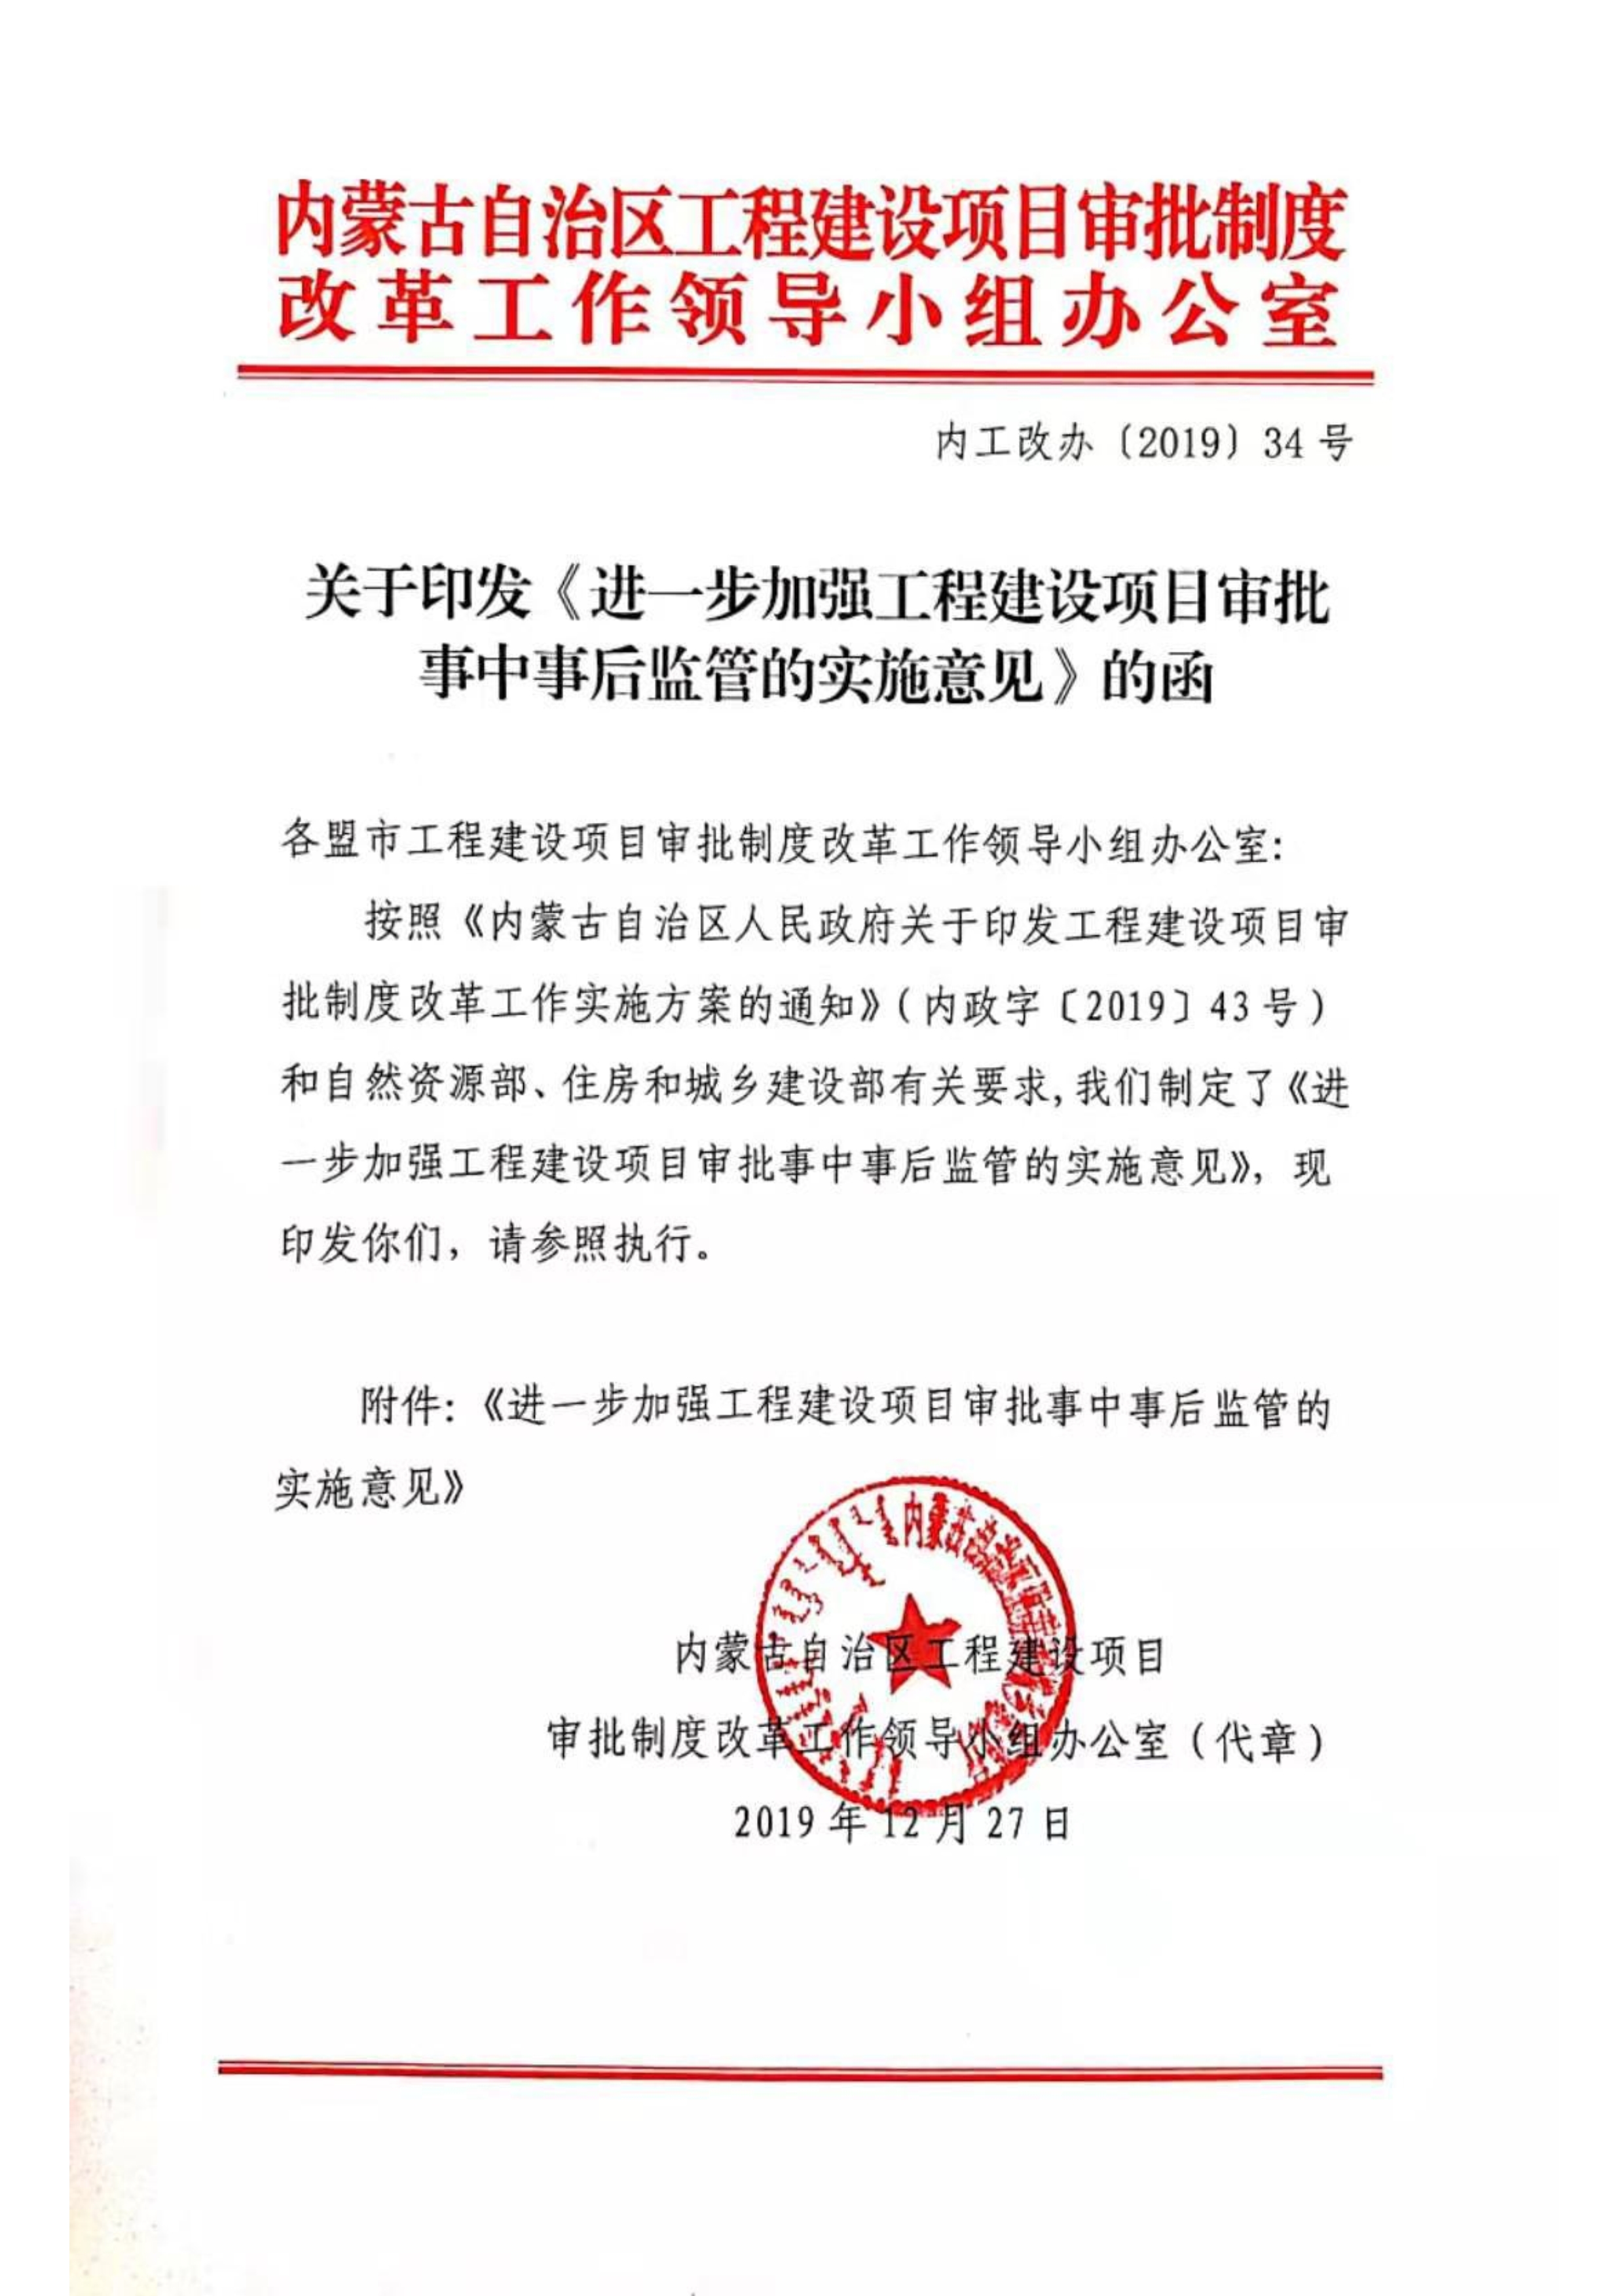 河南省商务厅关于端午节安全生产（消防安全）提示函-大学科技园